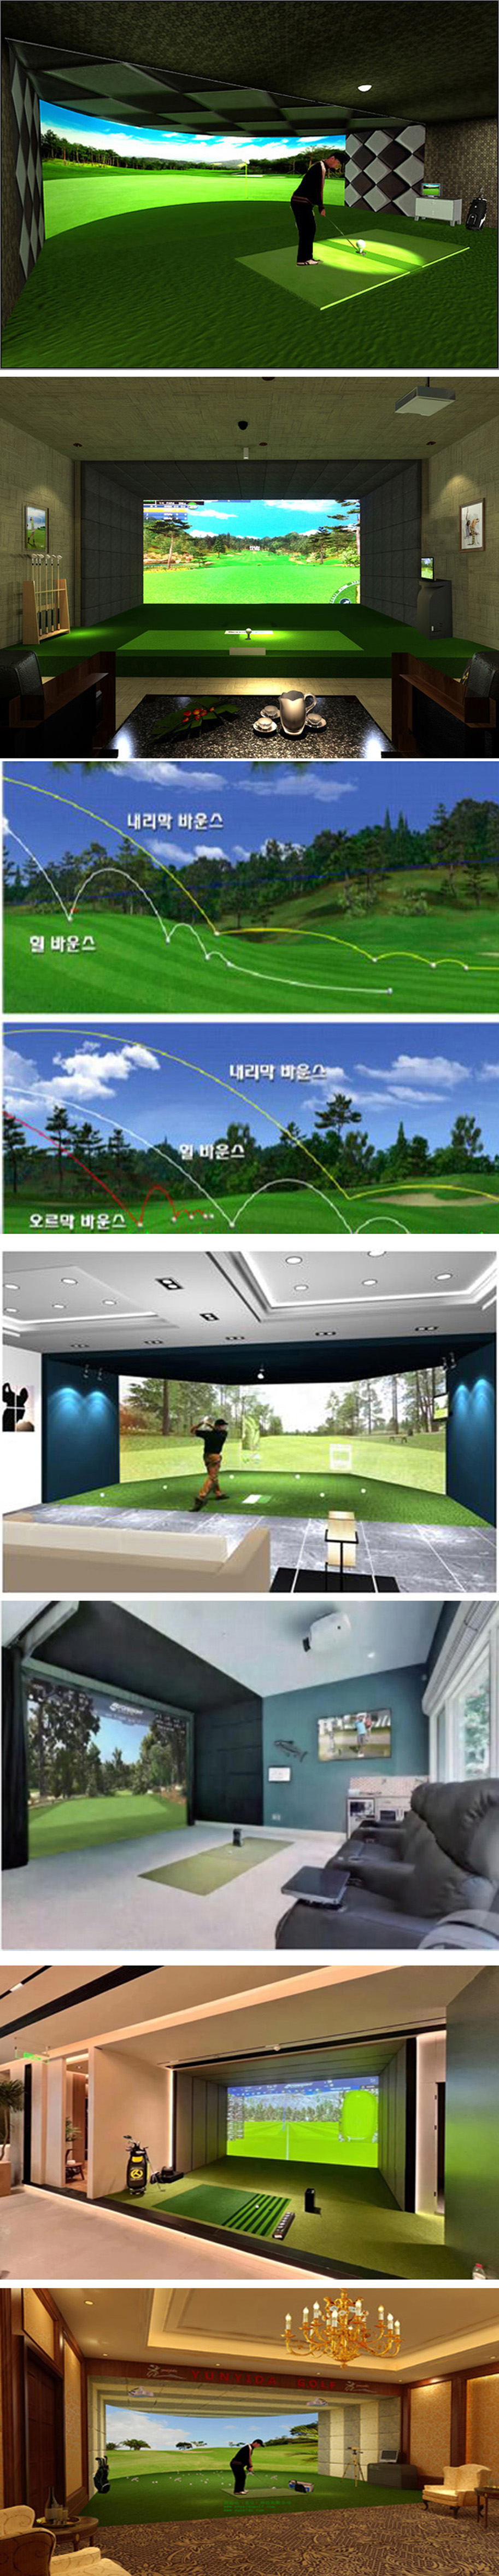 室内高尔夫设备练习场案例 03.jpg